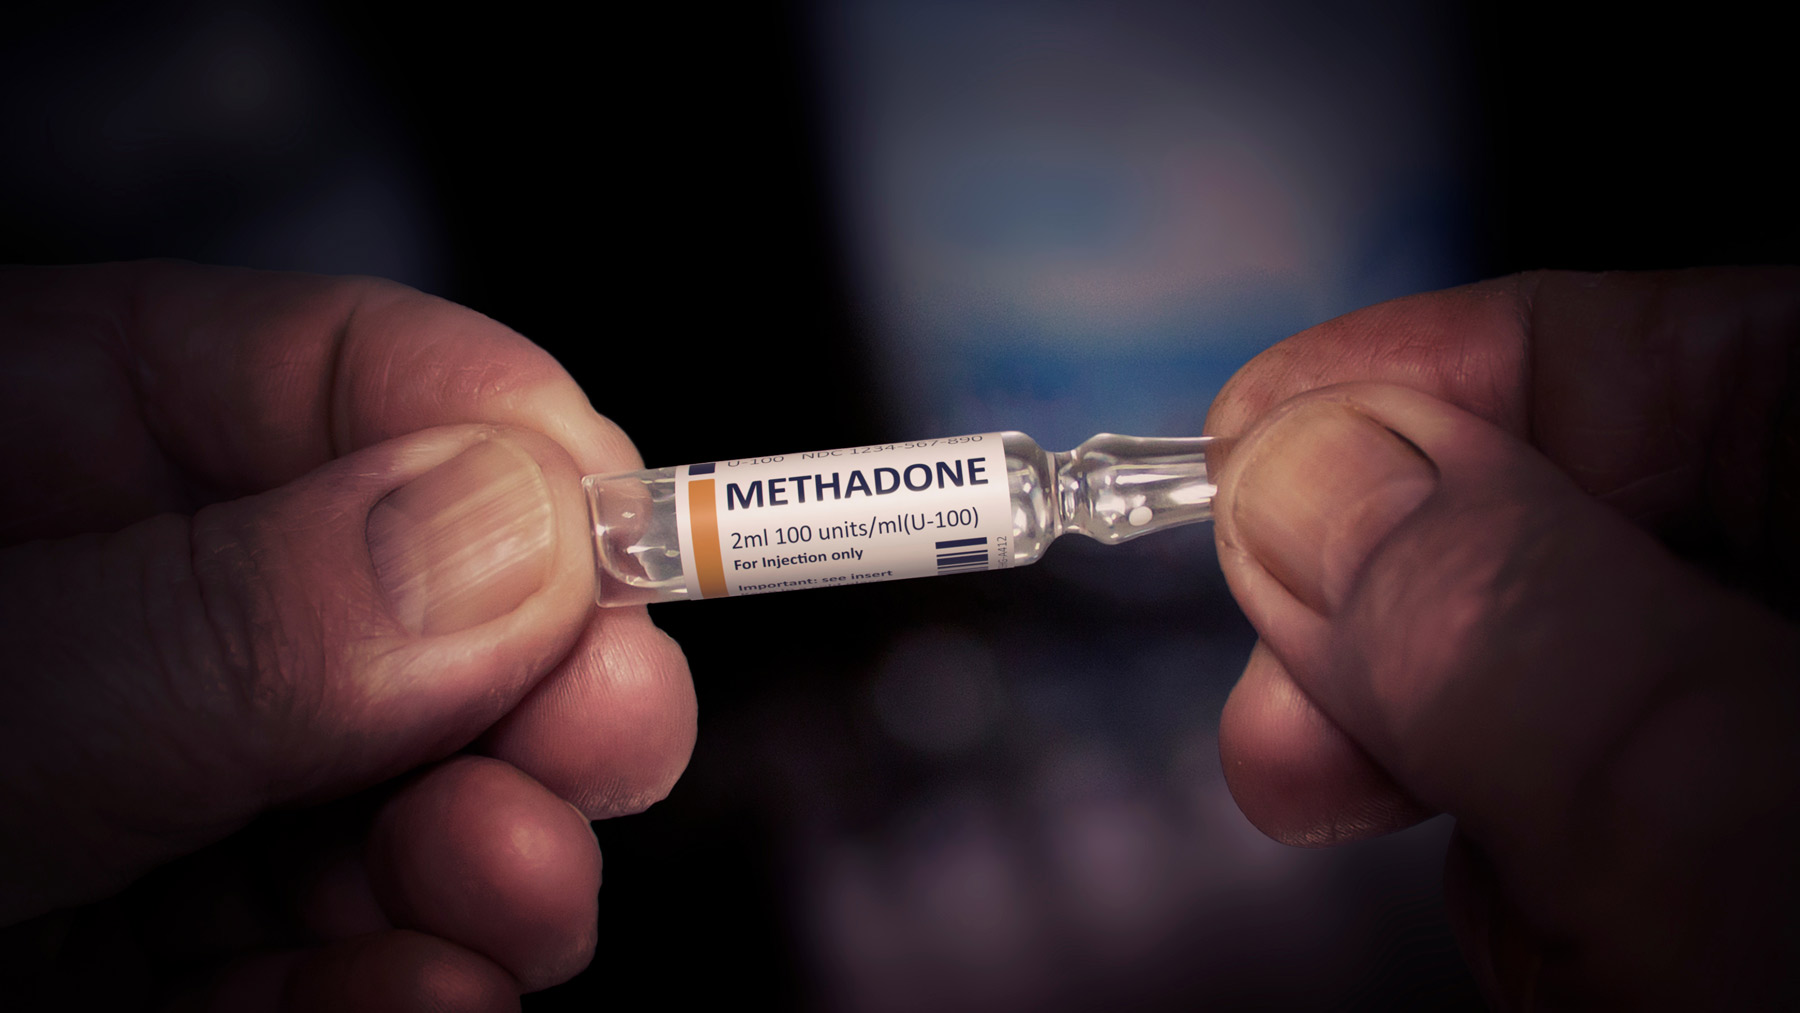 Vial of Methadone